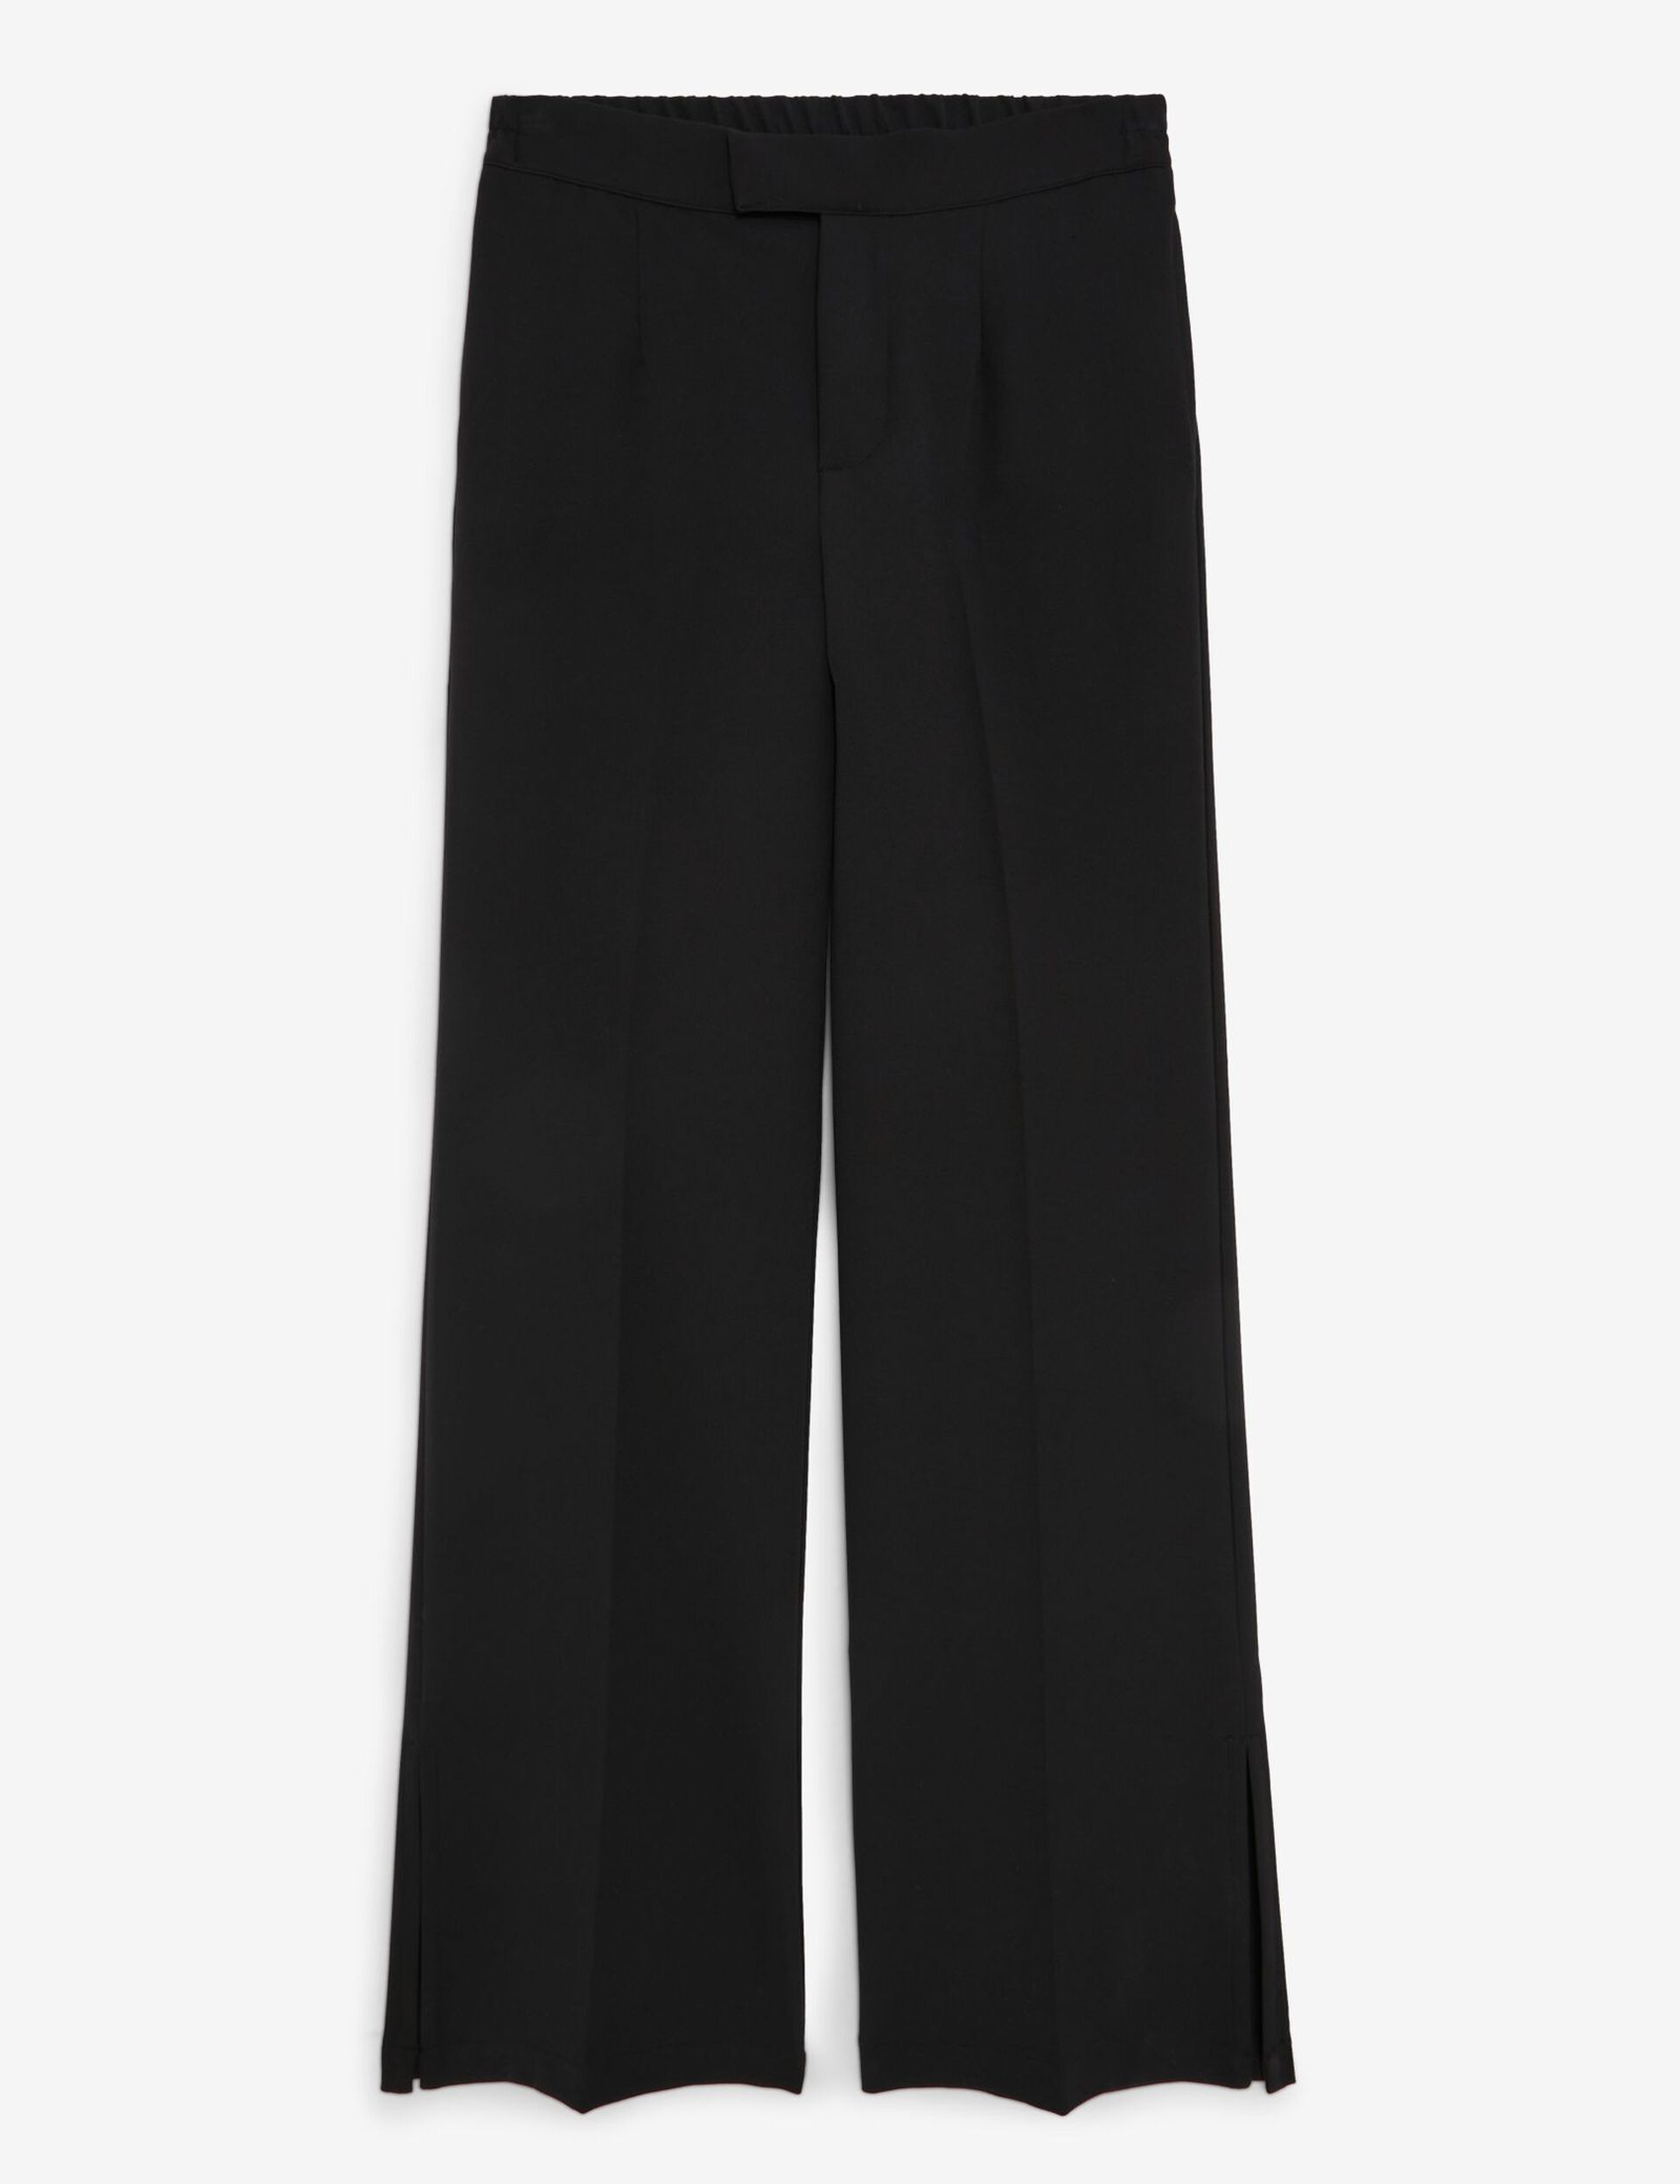 Pantalon tailleur taille élastiquée noir